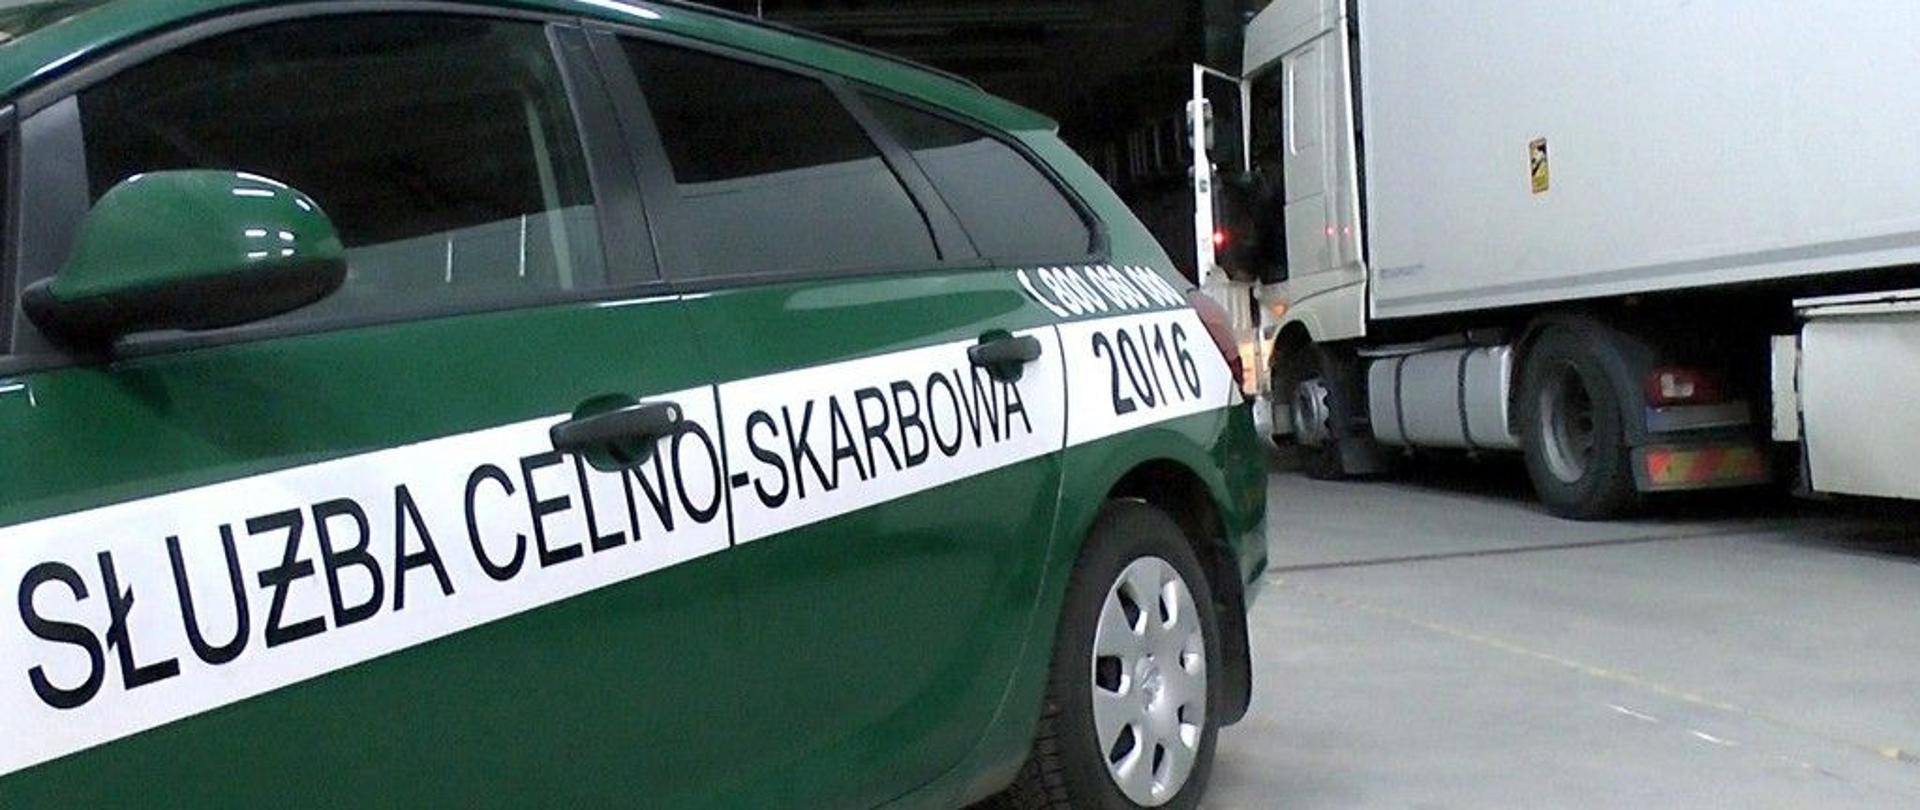 Bok radiowozu z napisem Służba Celno-Skarbowa, za nim samochód ciężarowy.